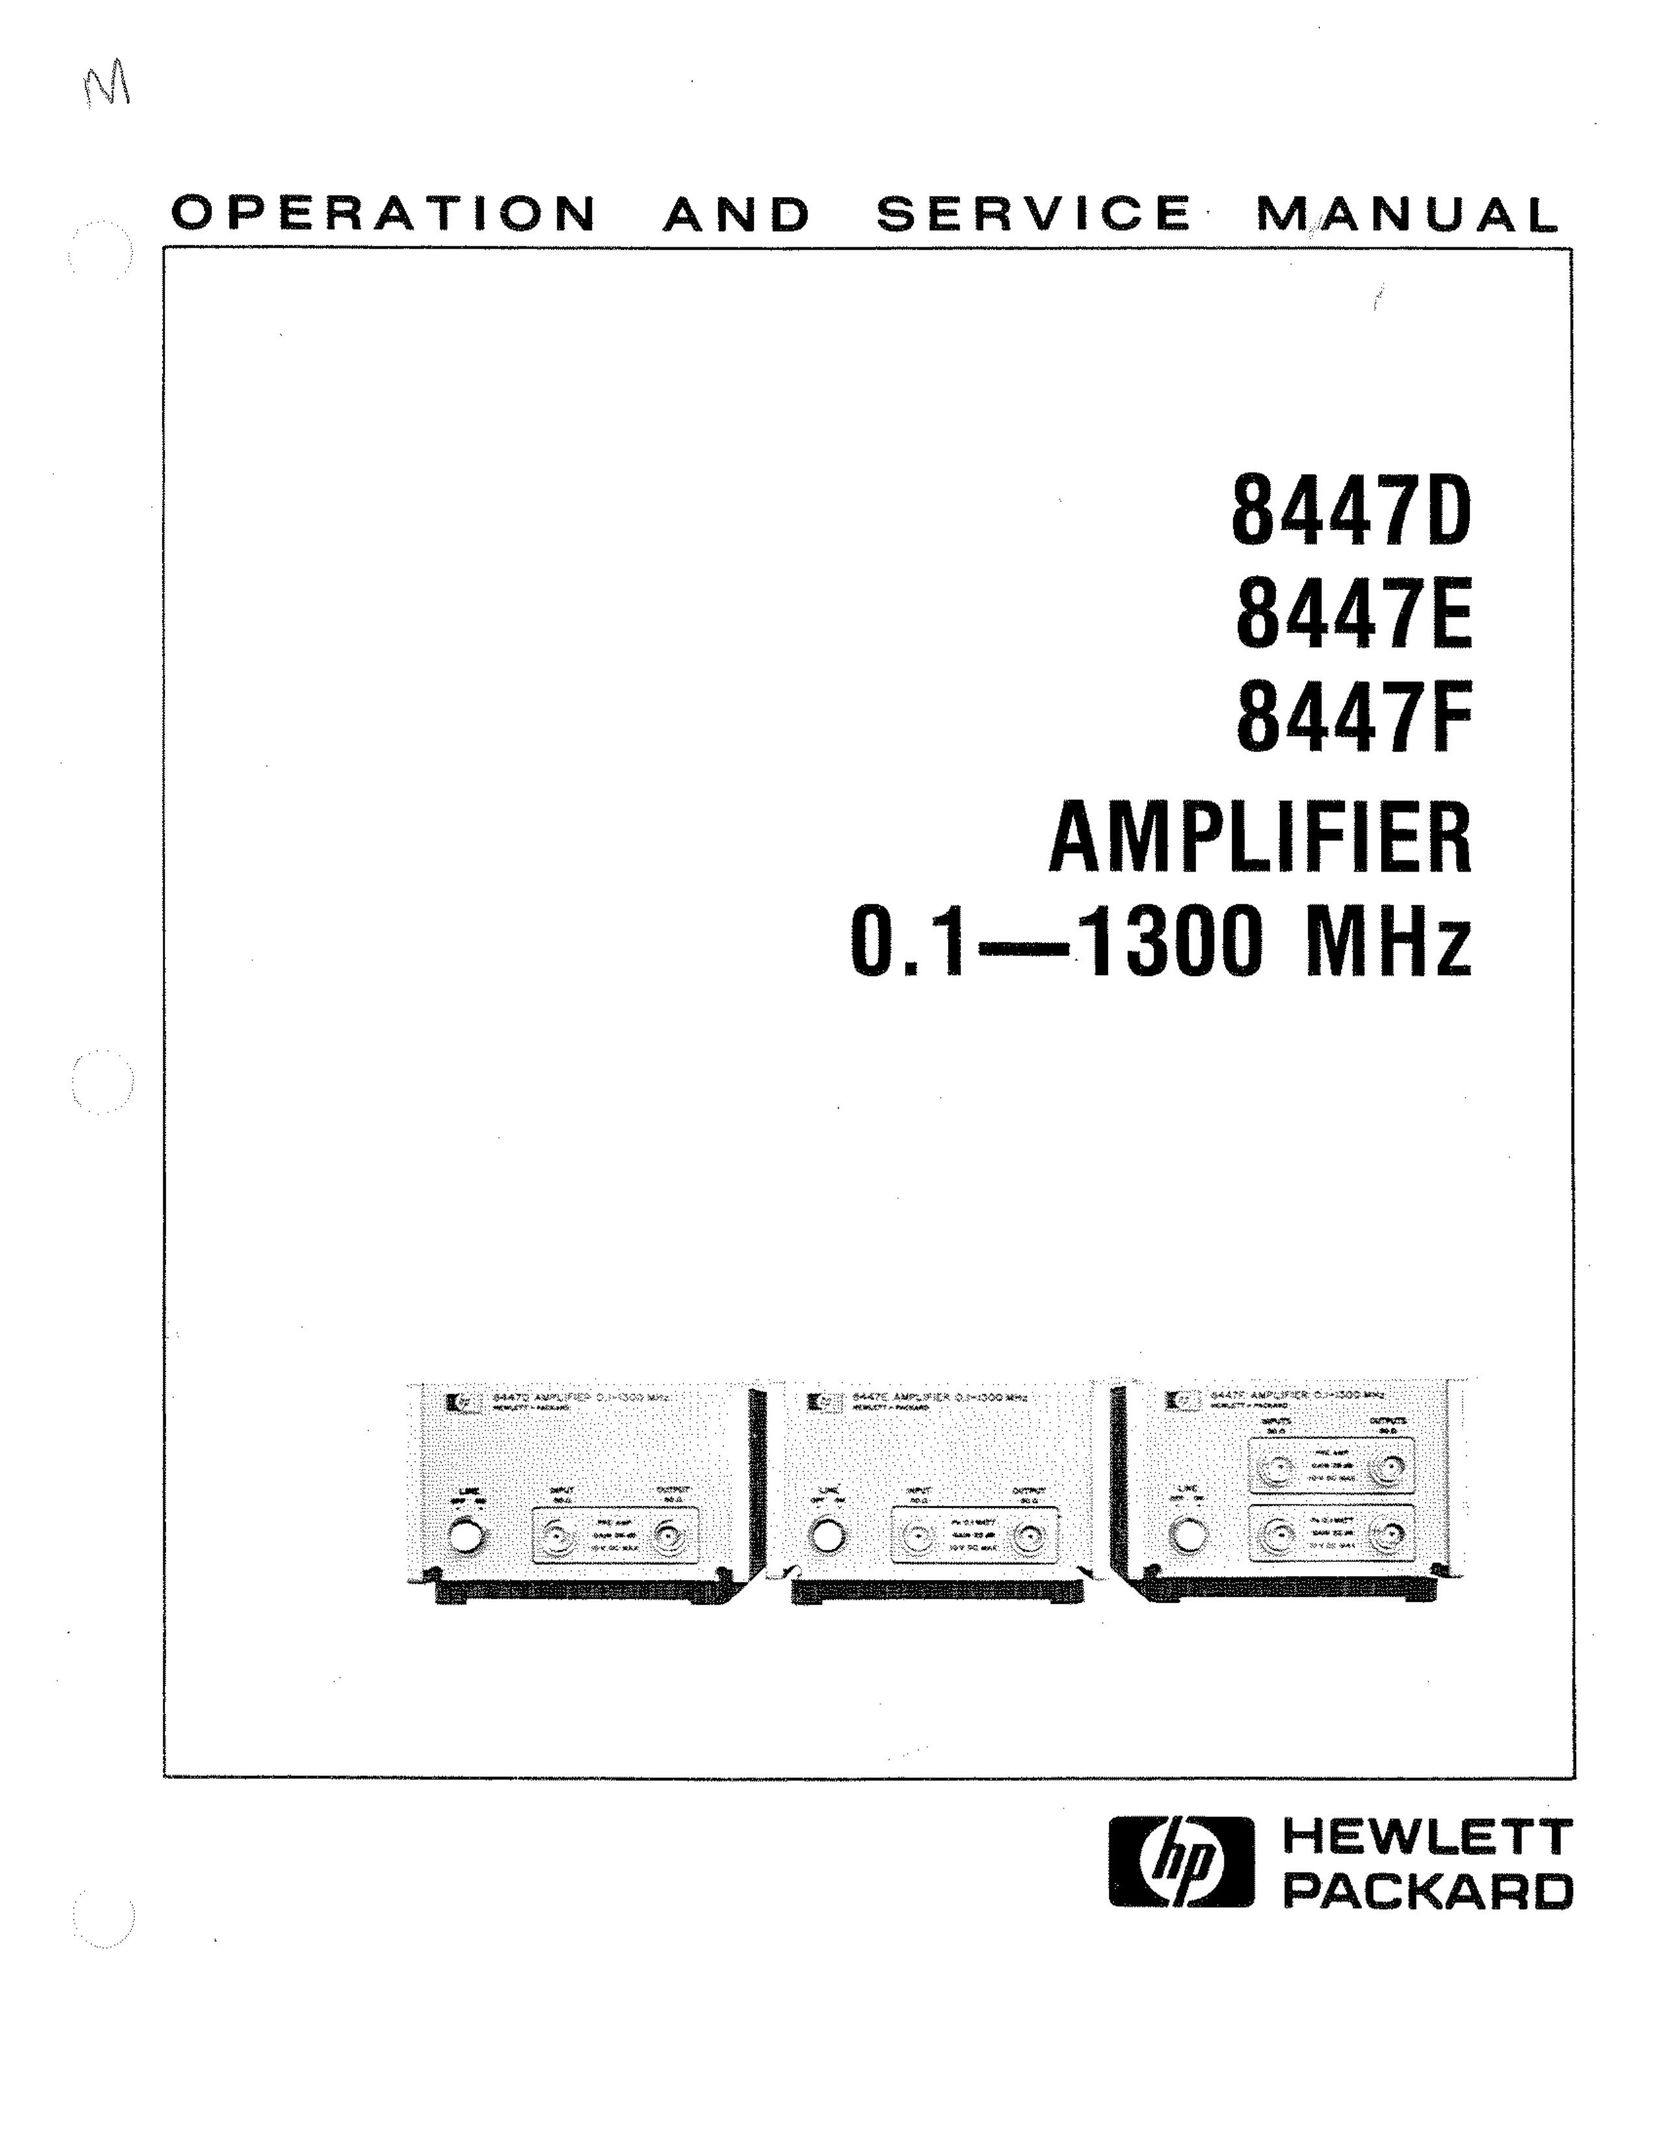 HP (Hewlett-Packard) 8447E Car Amplifier User Manual